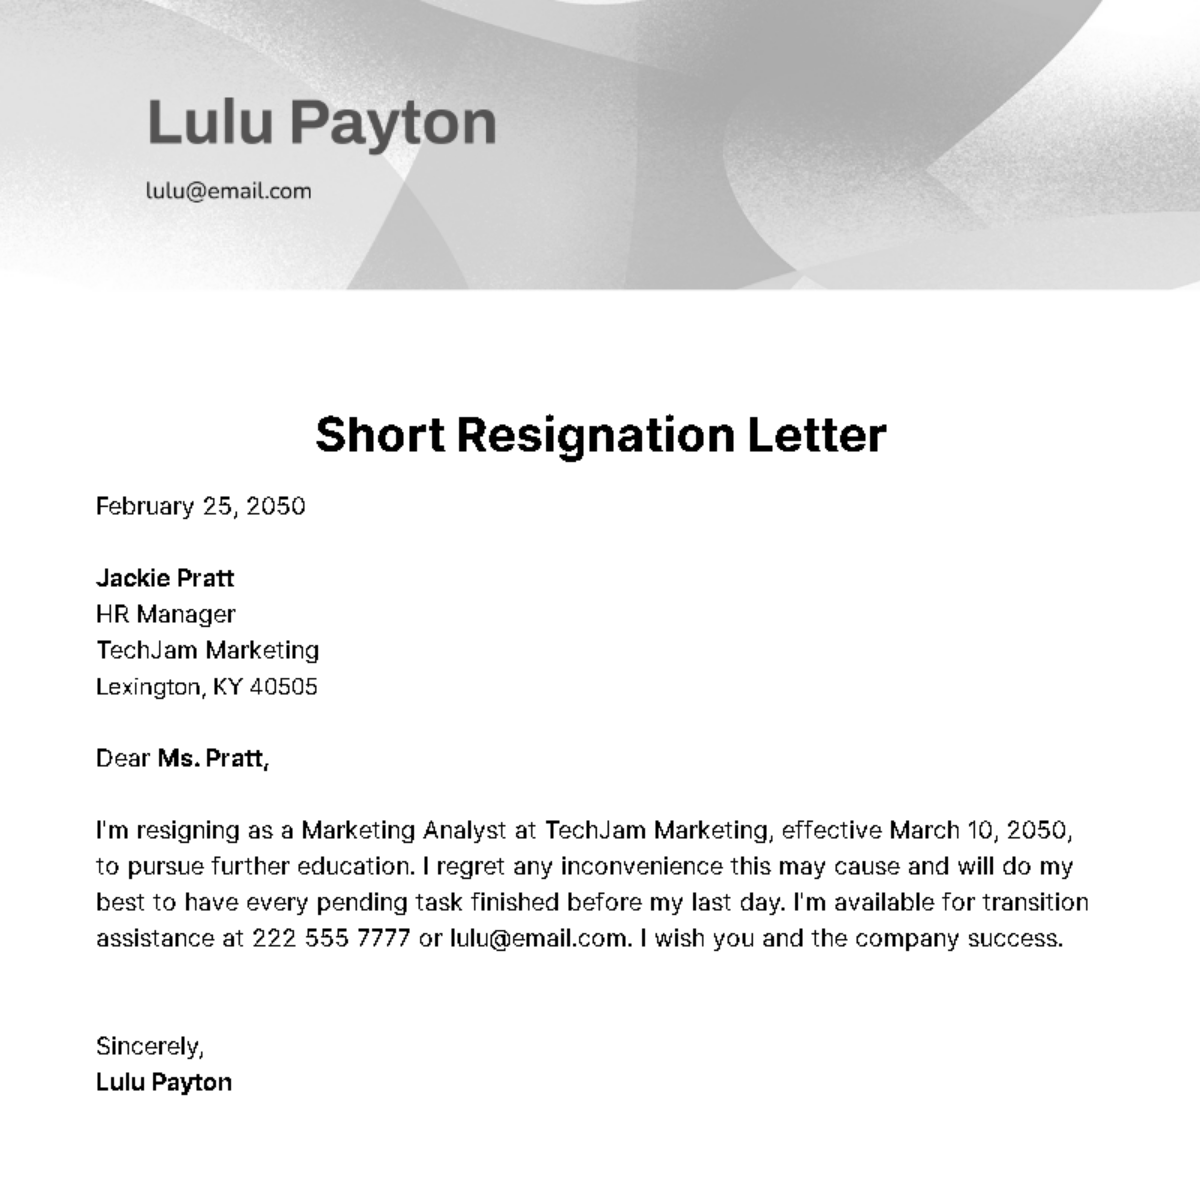 Short Resignation Letter Template